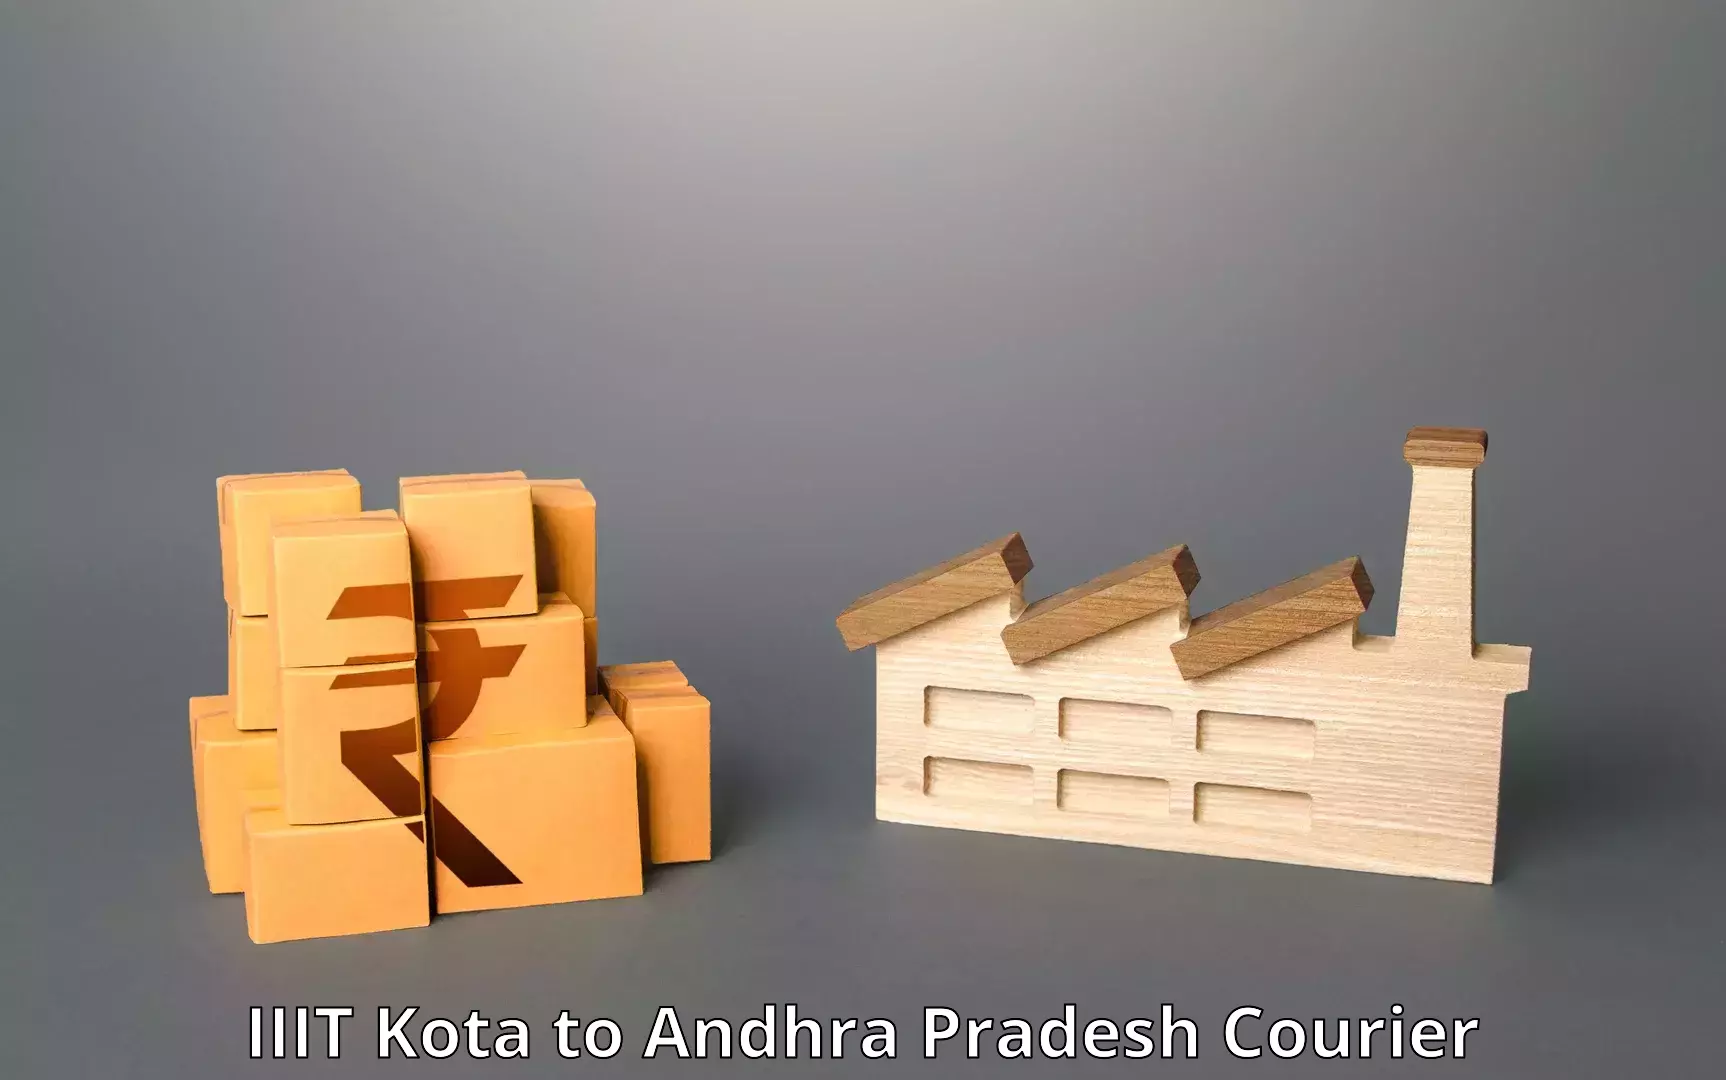 Door-to-door shipment IIIT Kota to Andhra Pradesh